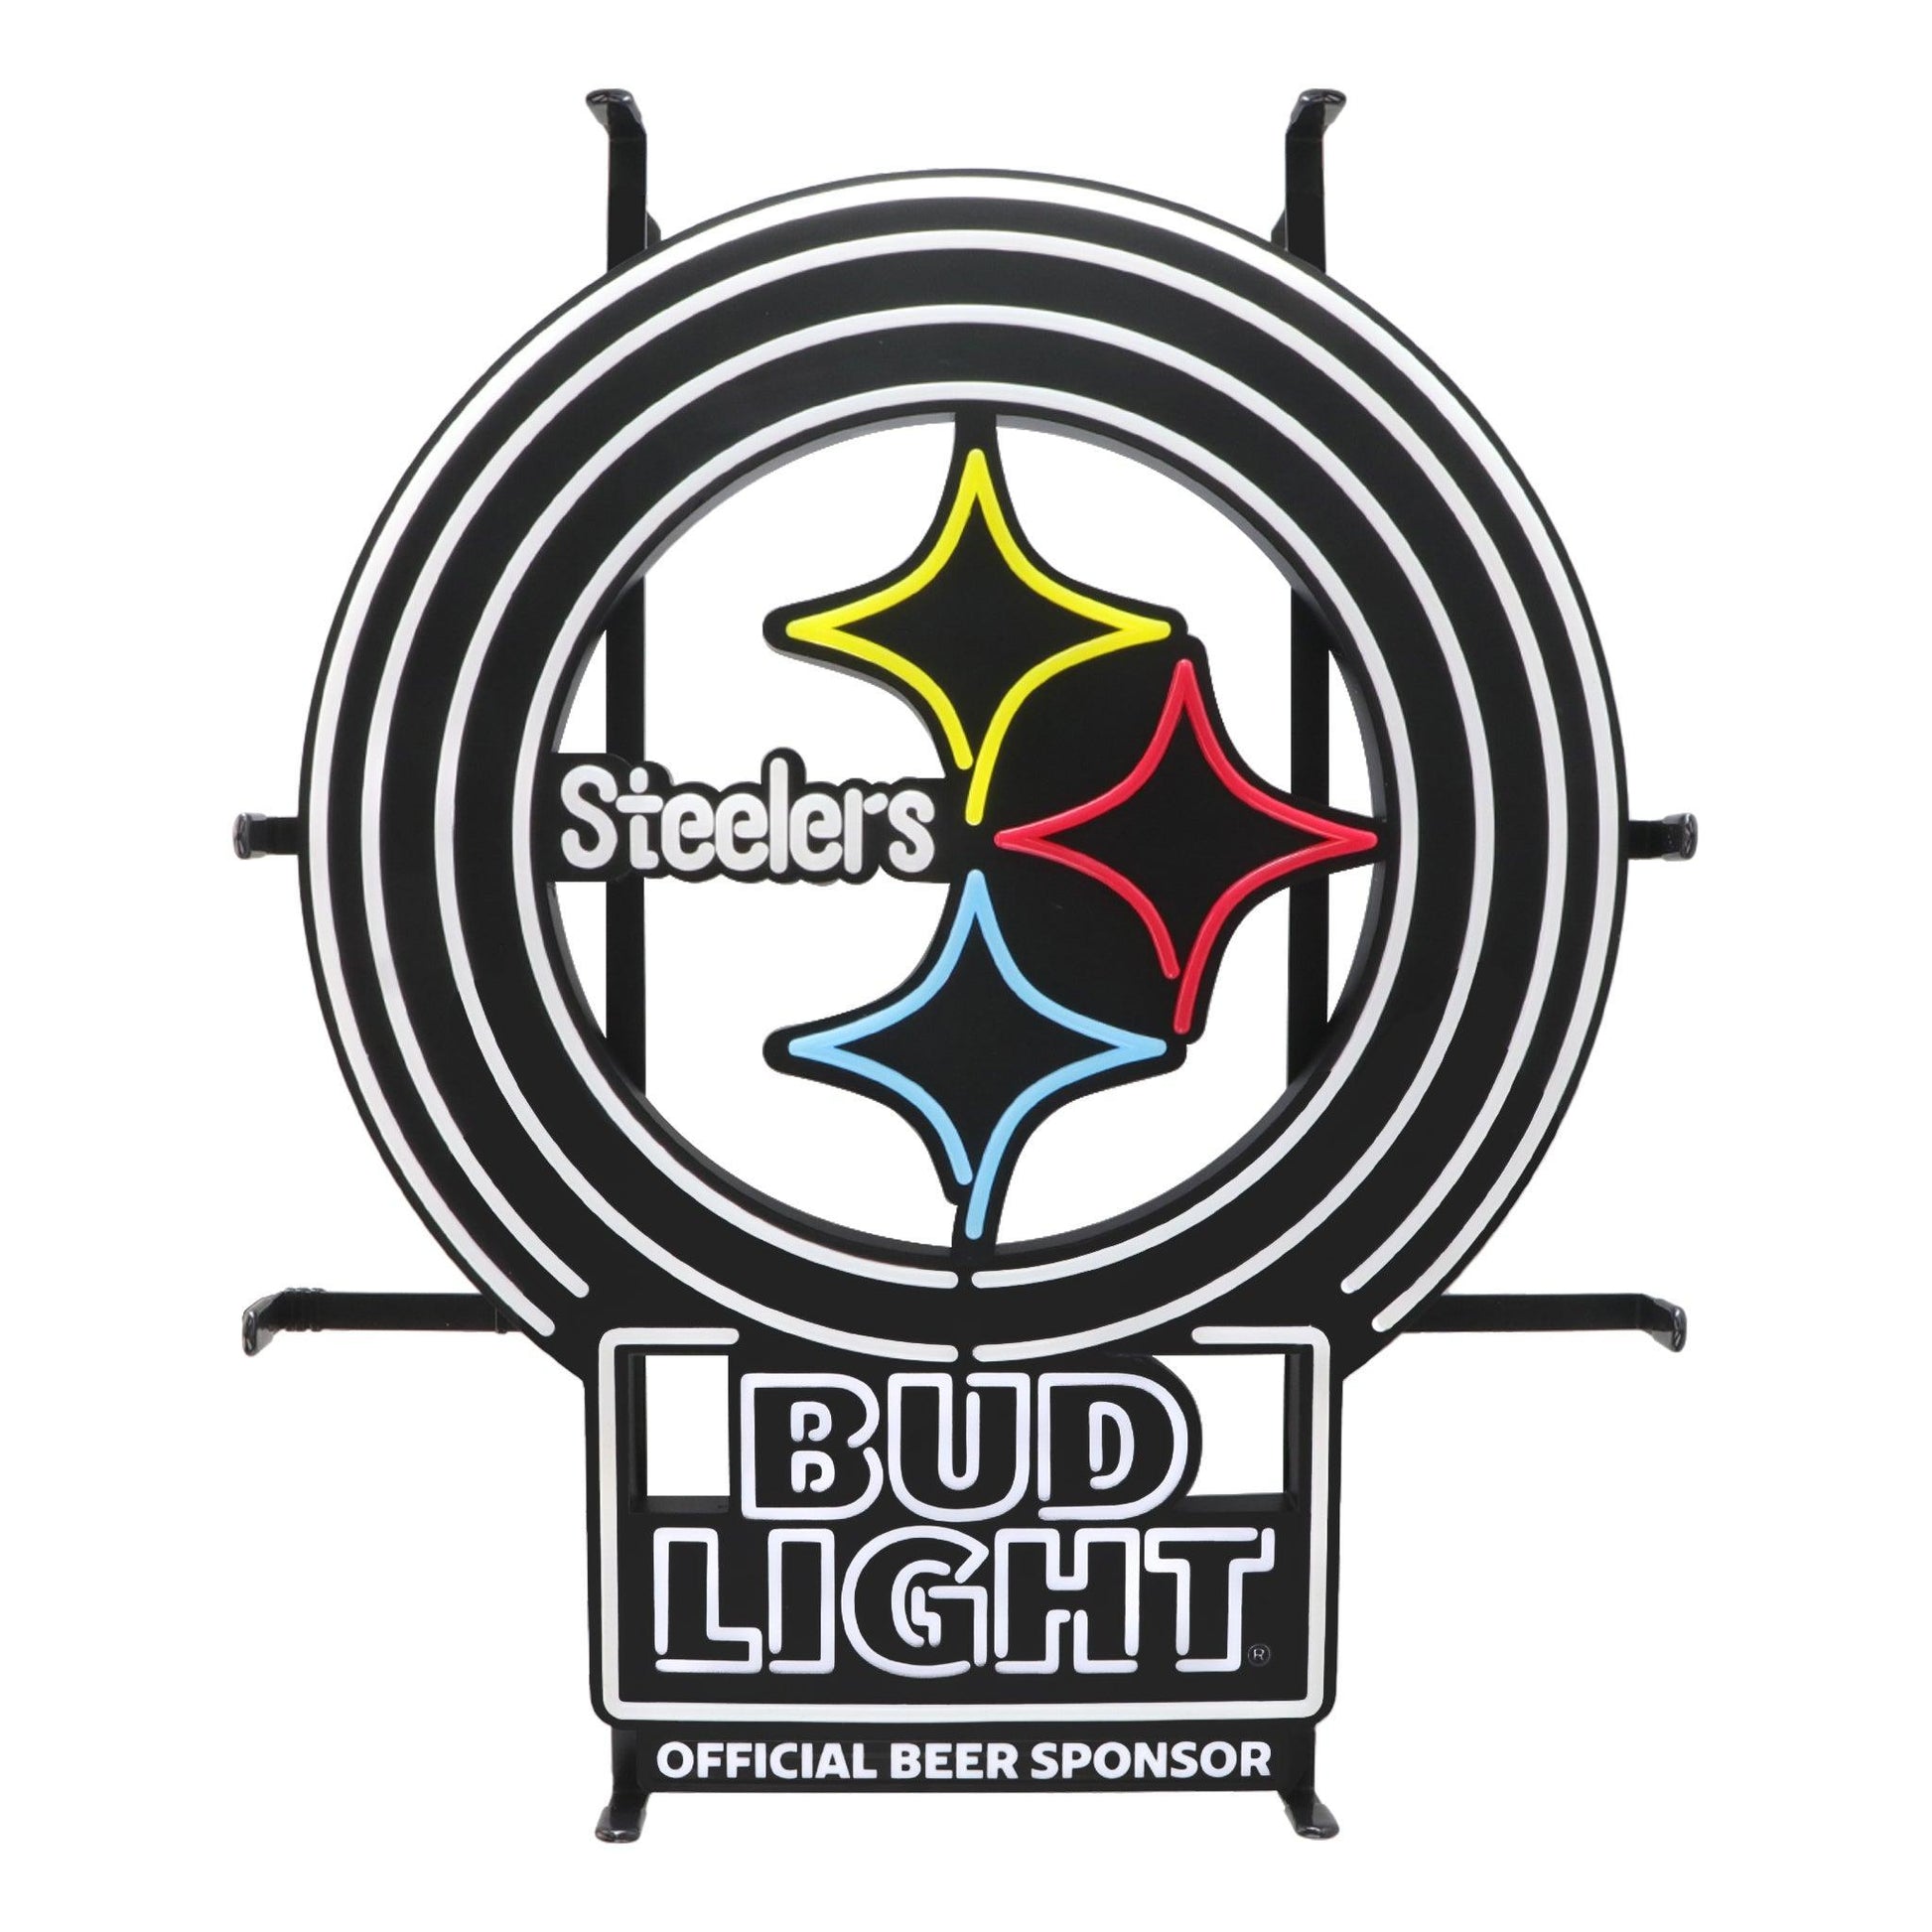 Steelers logo with Bud Light logo below it.